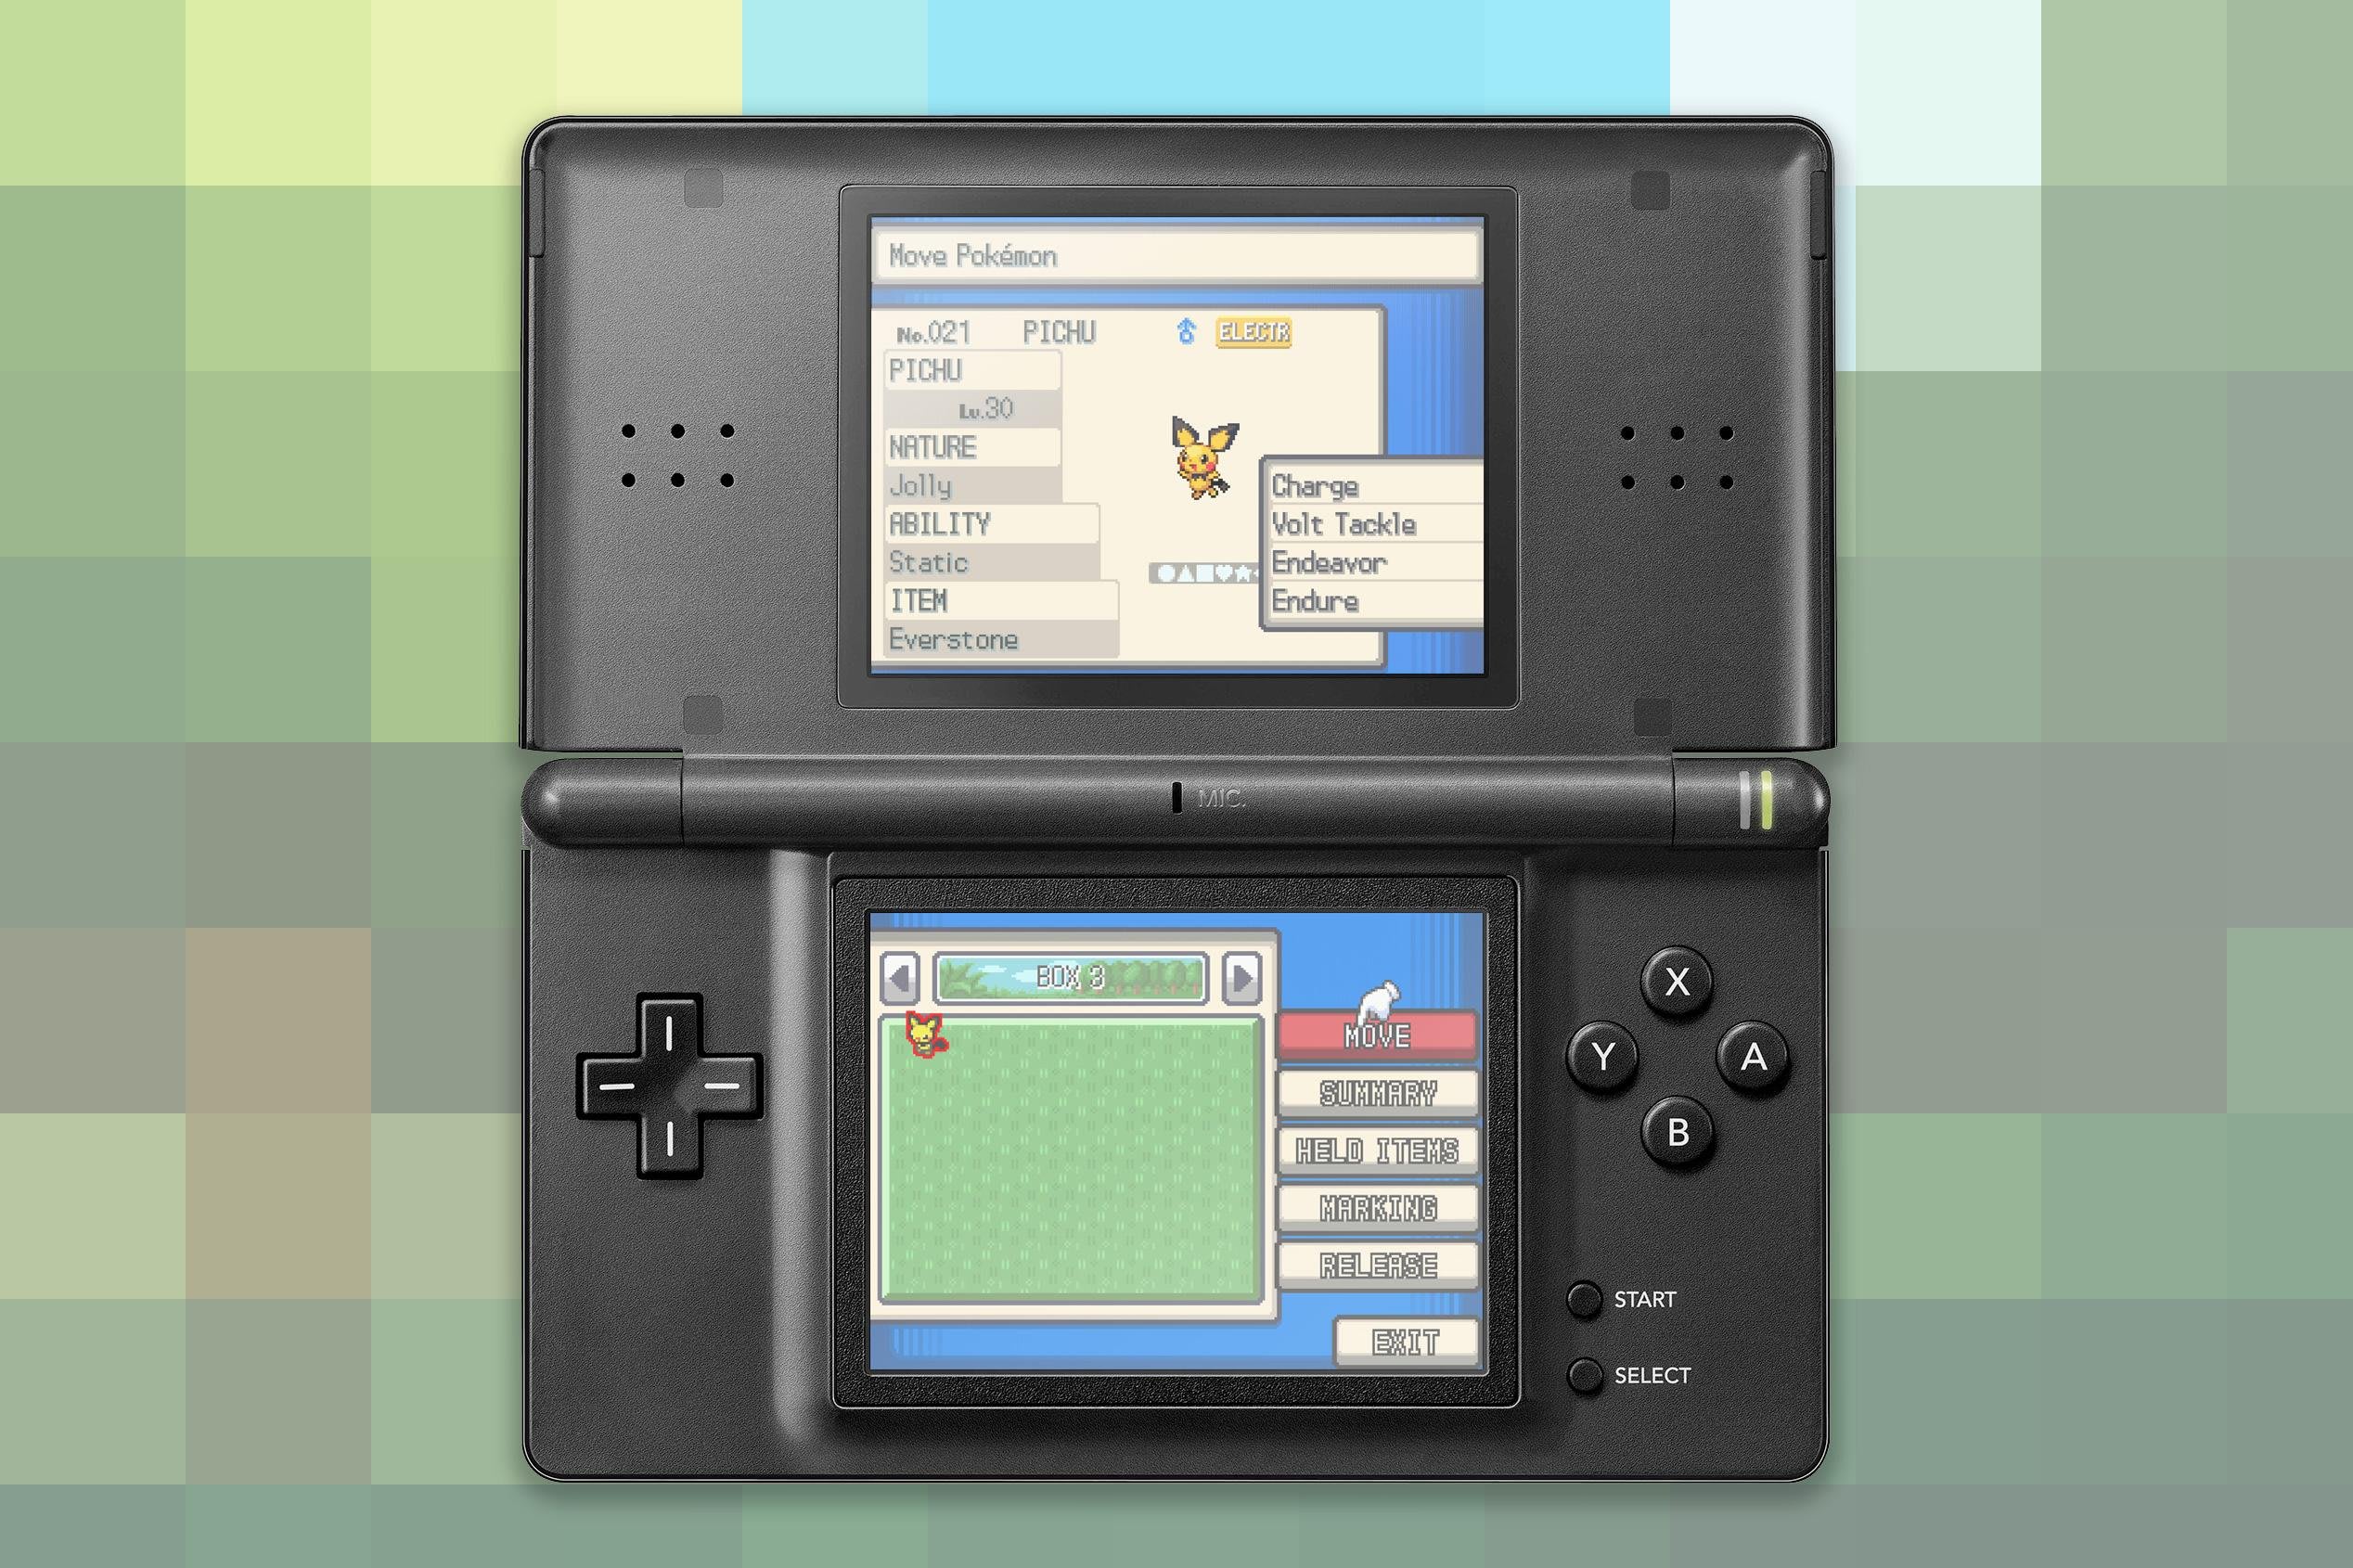 Conheça as criaturas iniciais de Pokémon X e Y para Nintendo 3DS